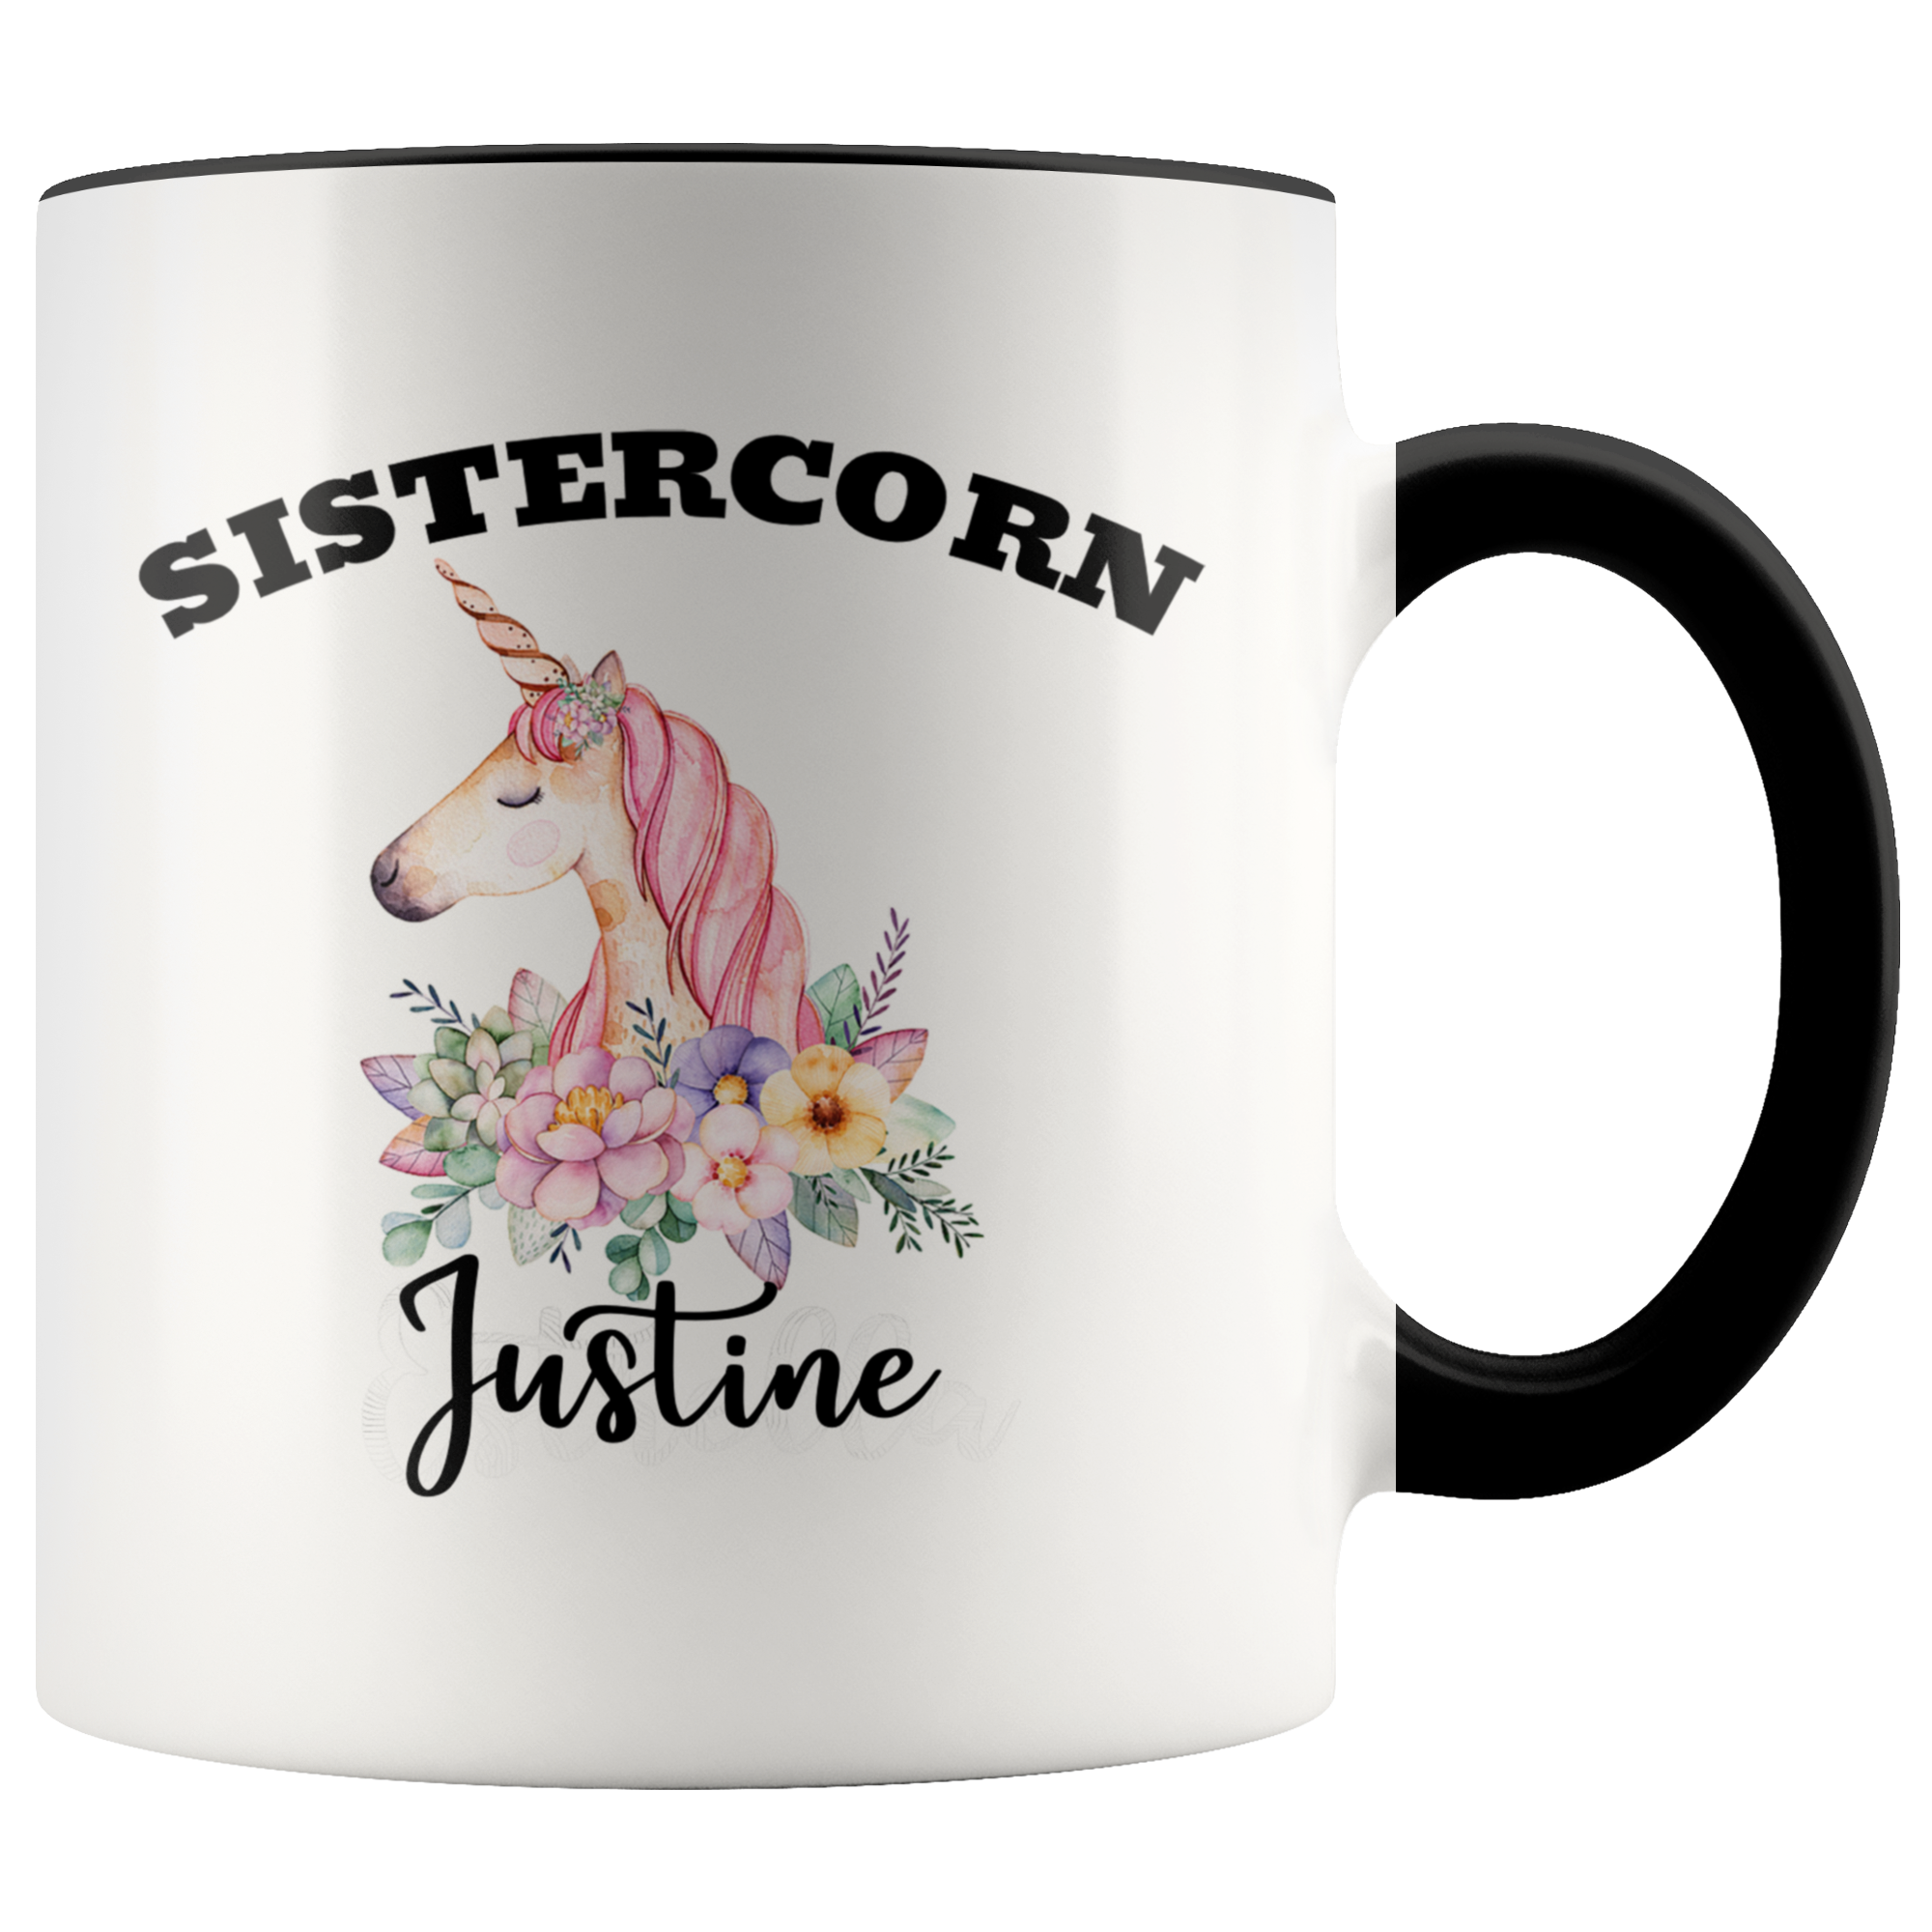 Sistercorn Mug - Justine